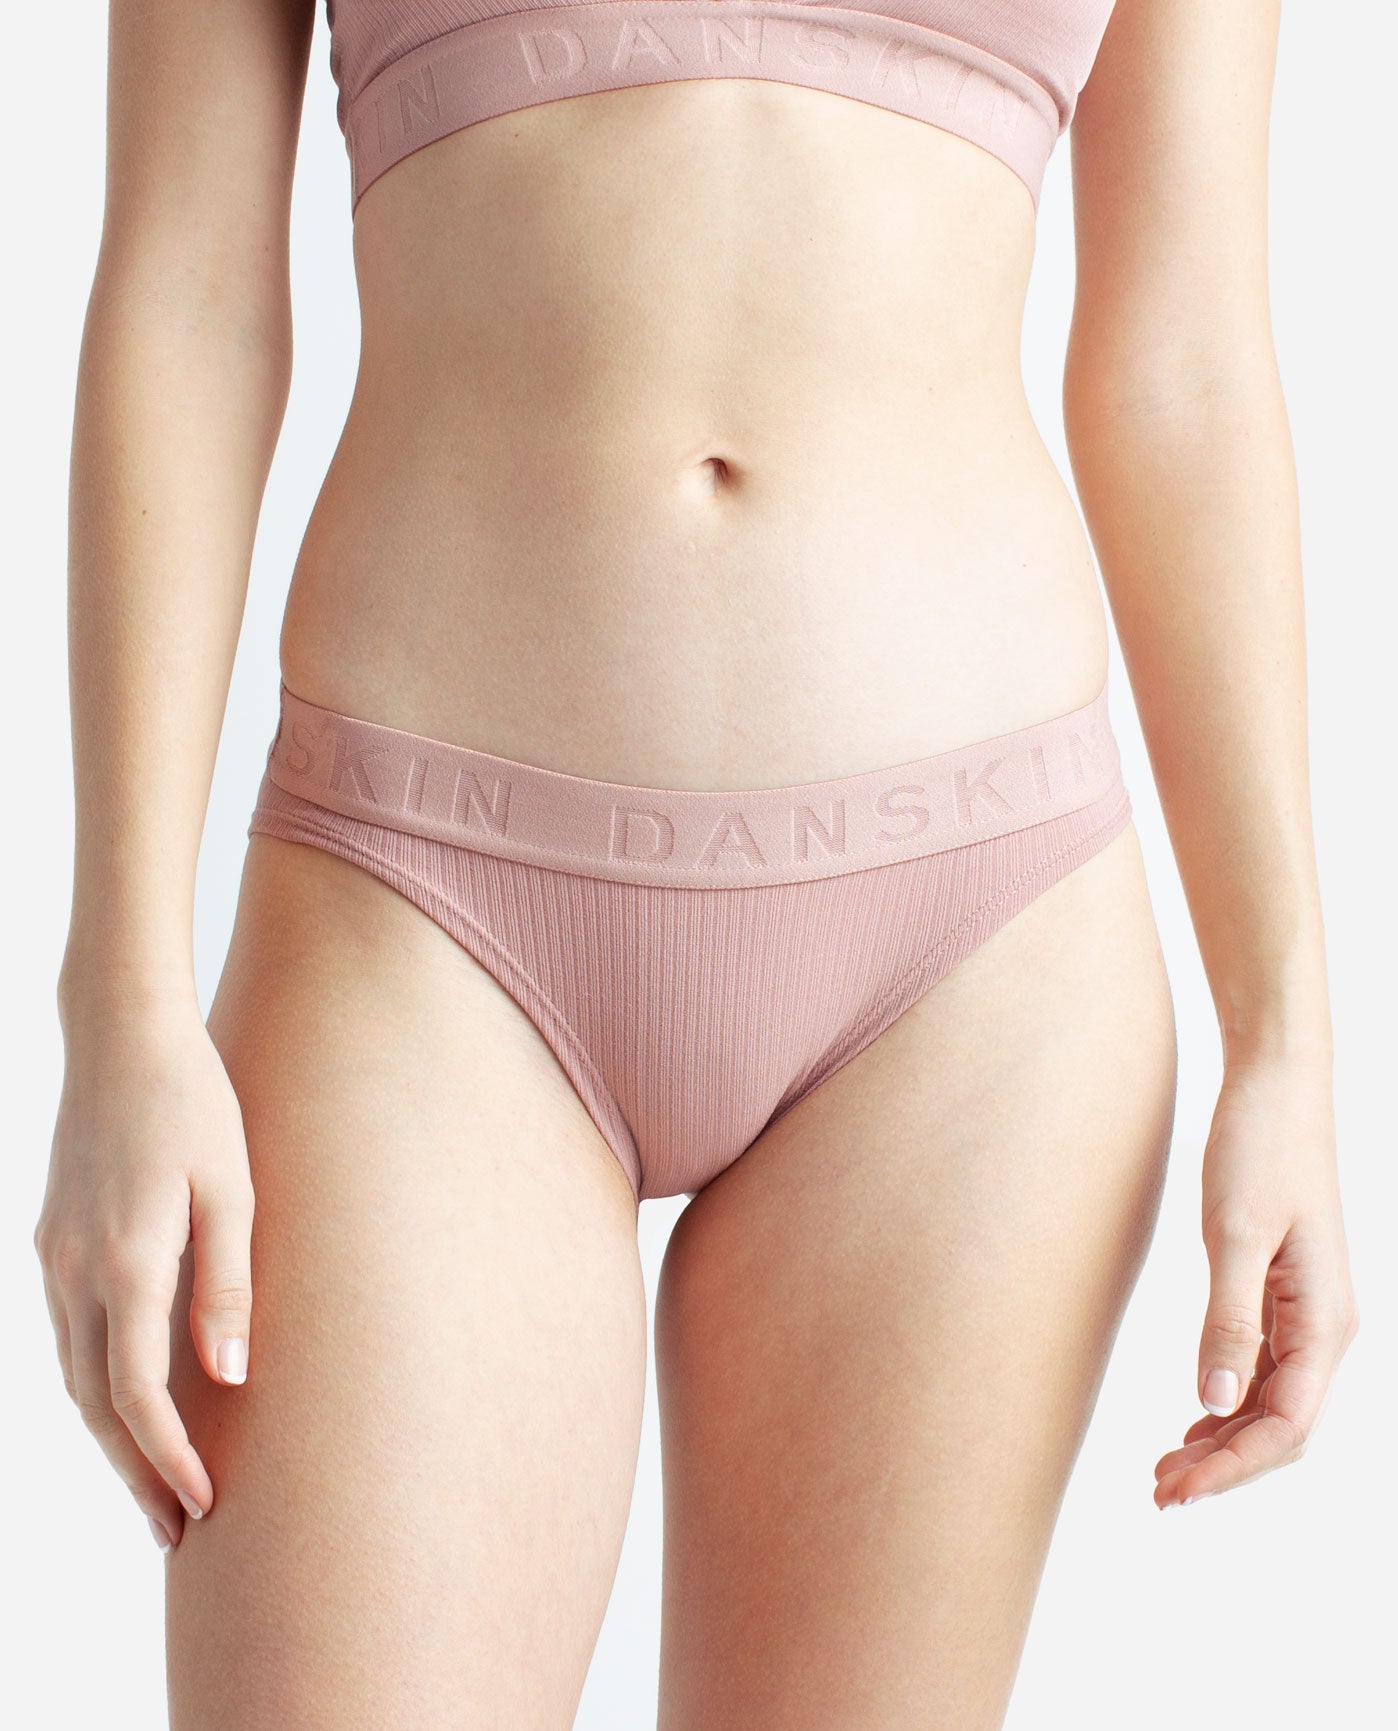 ⭐For Bundles Only⭐ Danskin Laser Cut Panties Powder Pink S